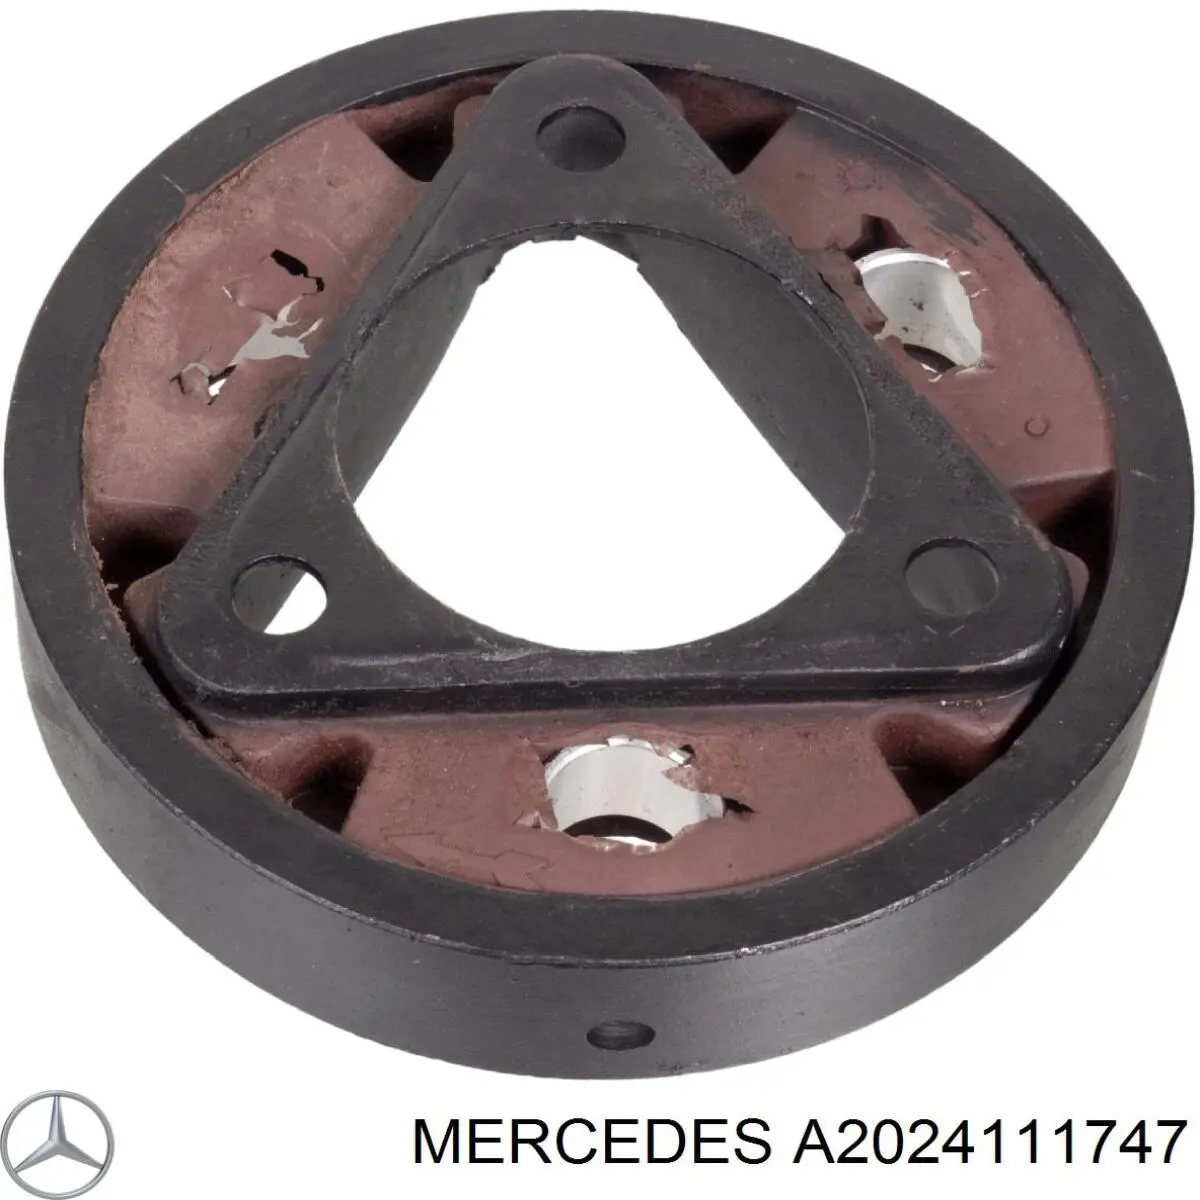 A2024111747 Mercedes soporte central externol de eje de transmision